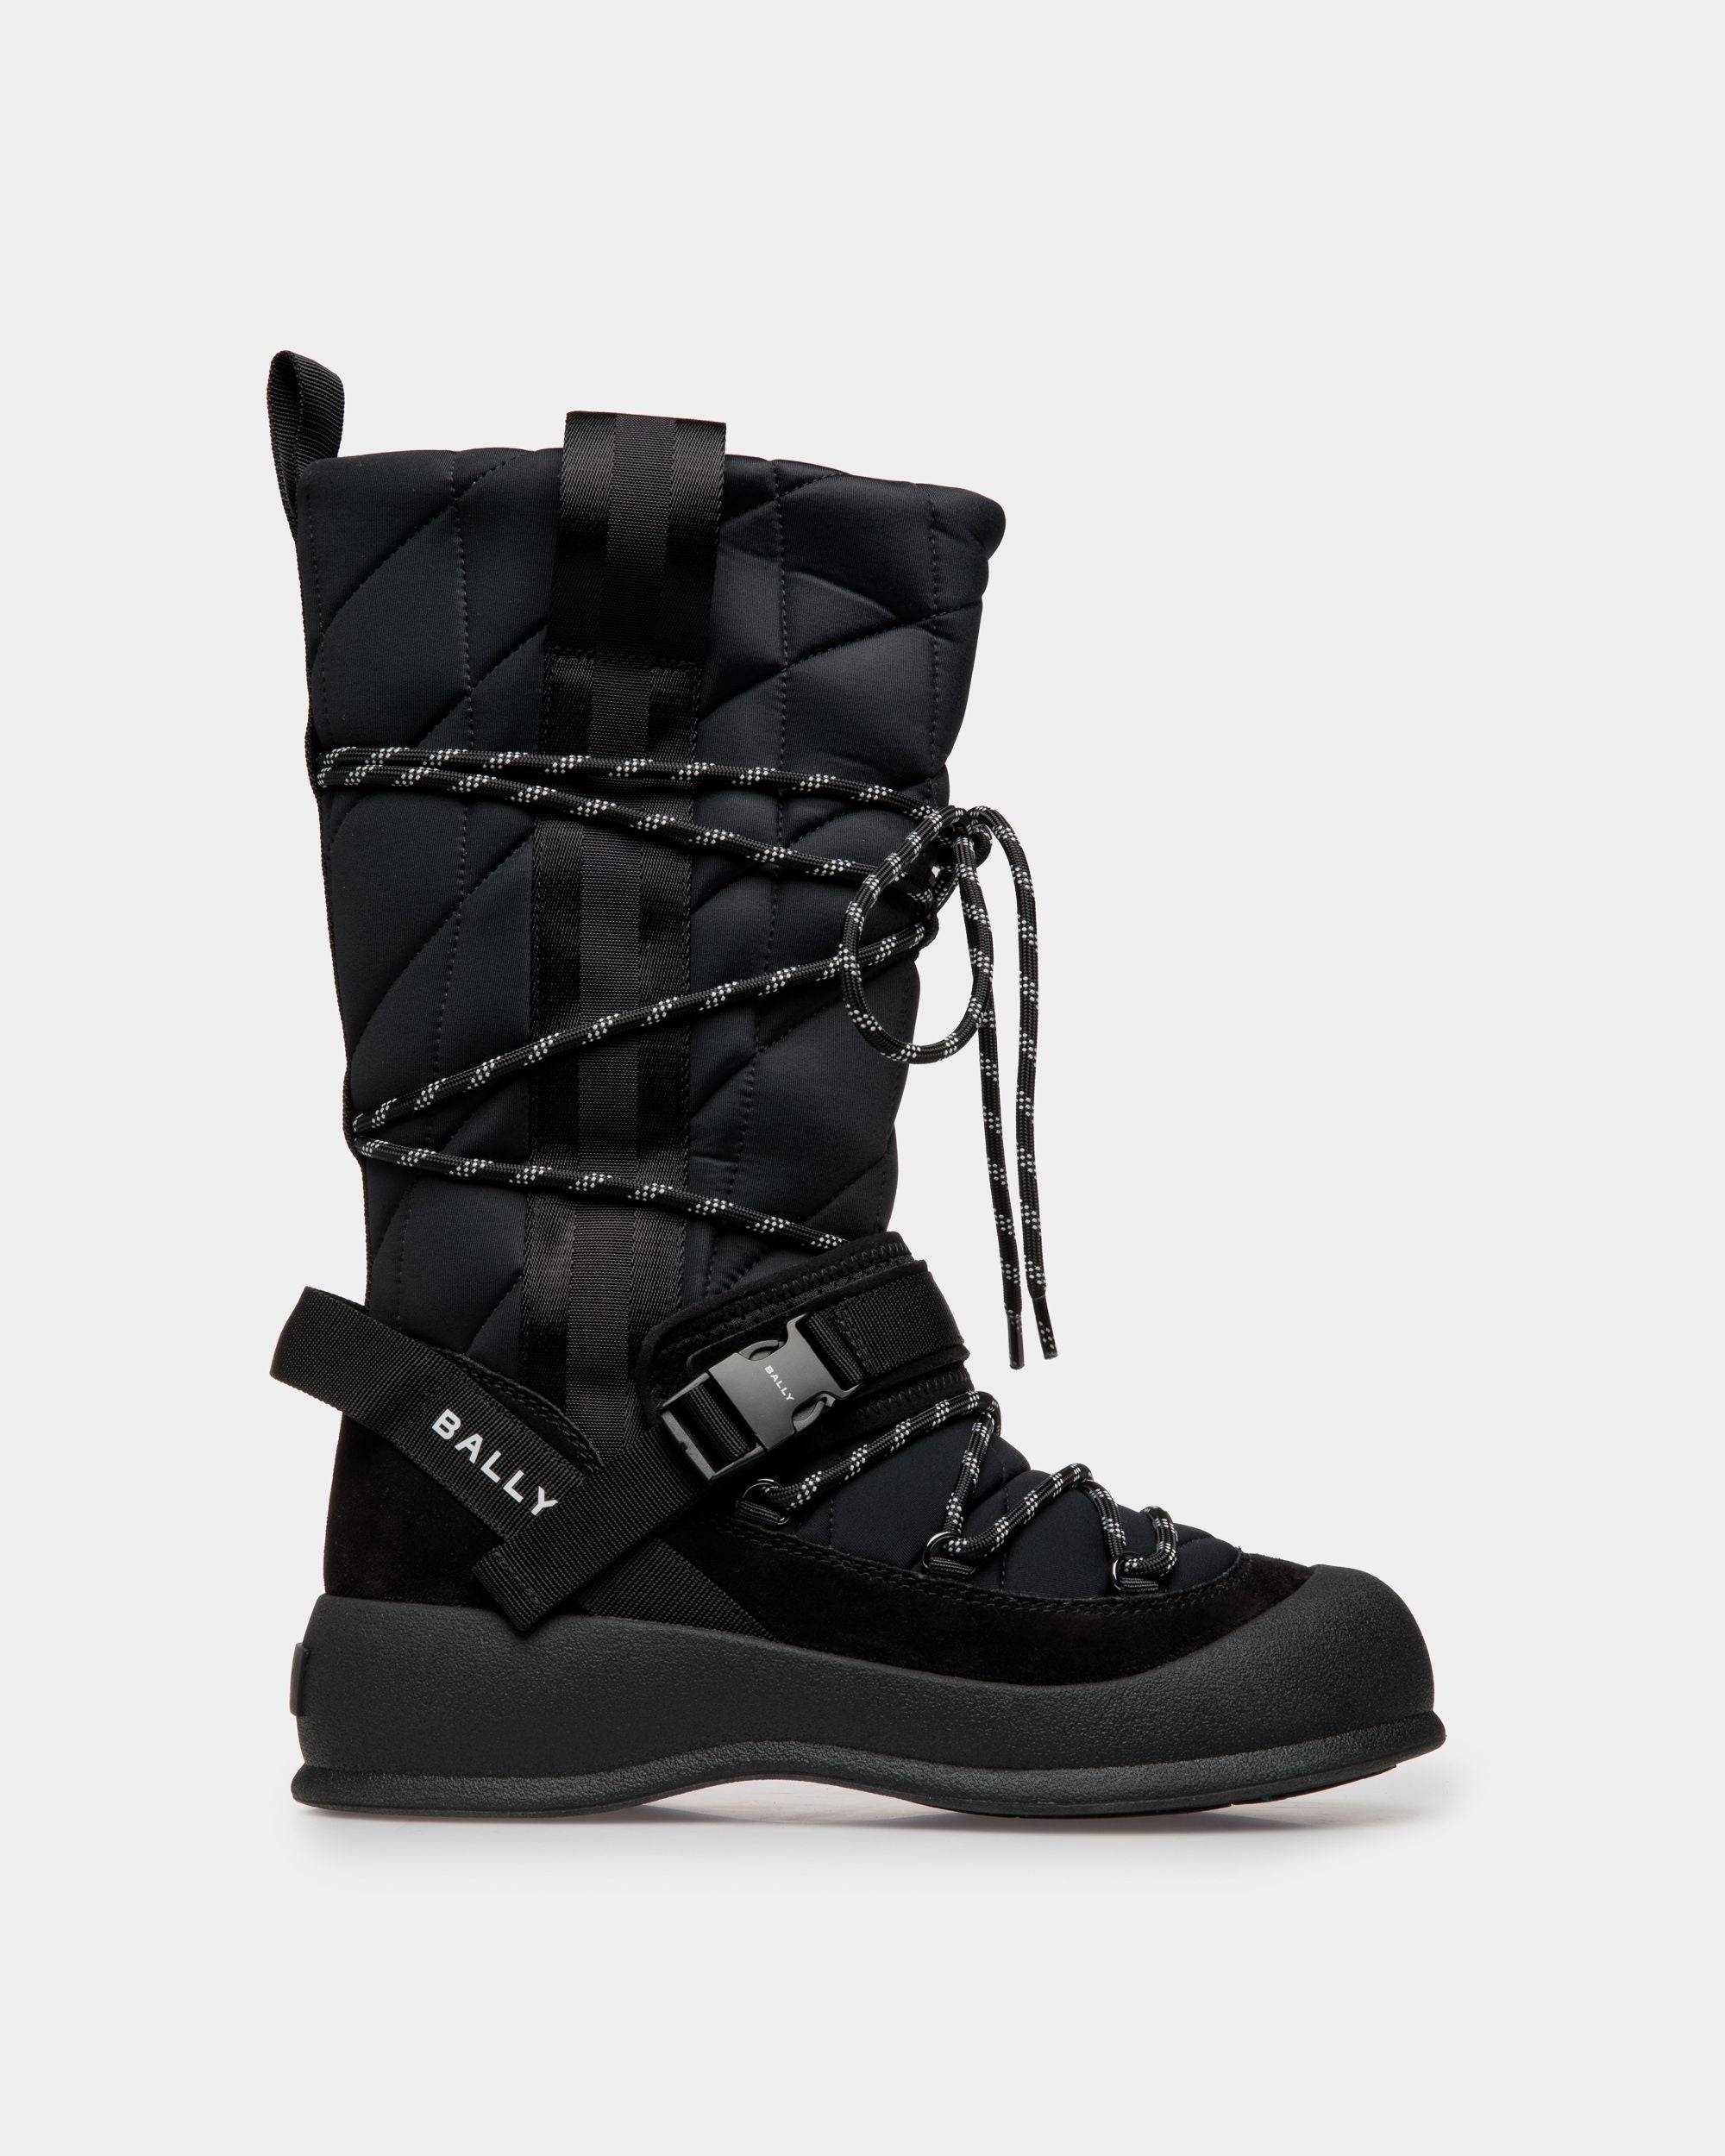 Women's Frei Boot In Black Nylon | Bally | Still Life Side